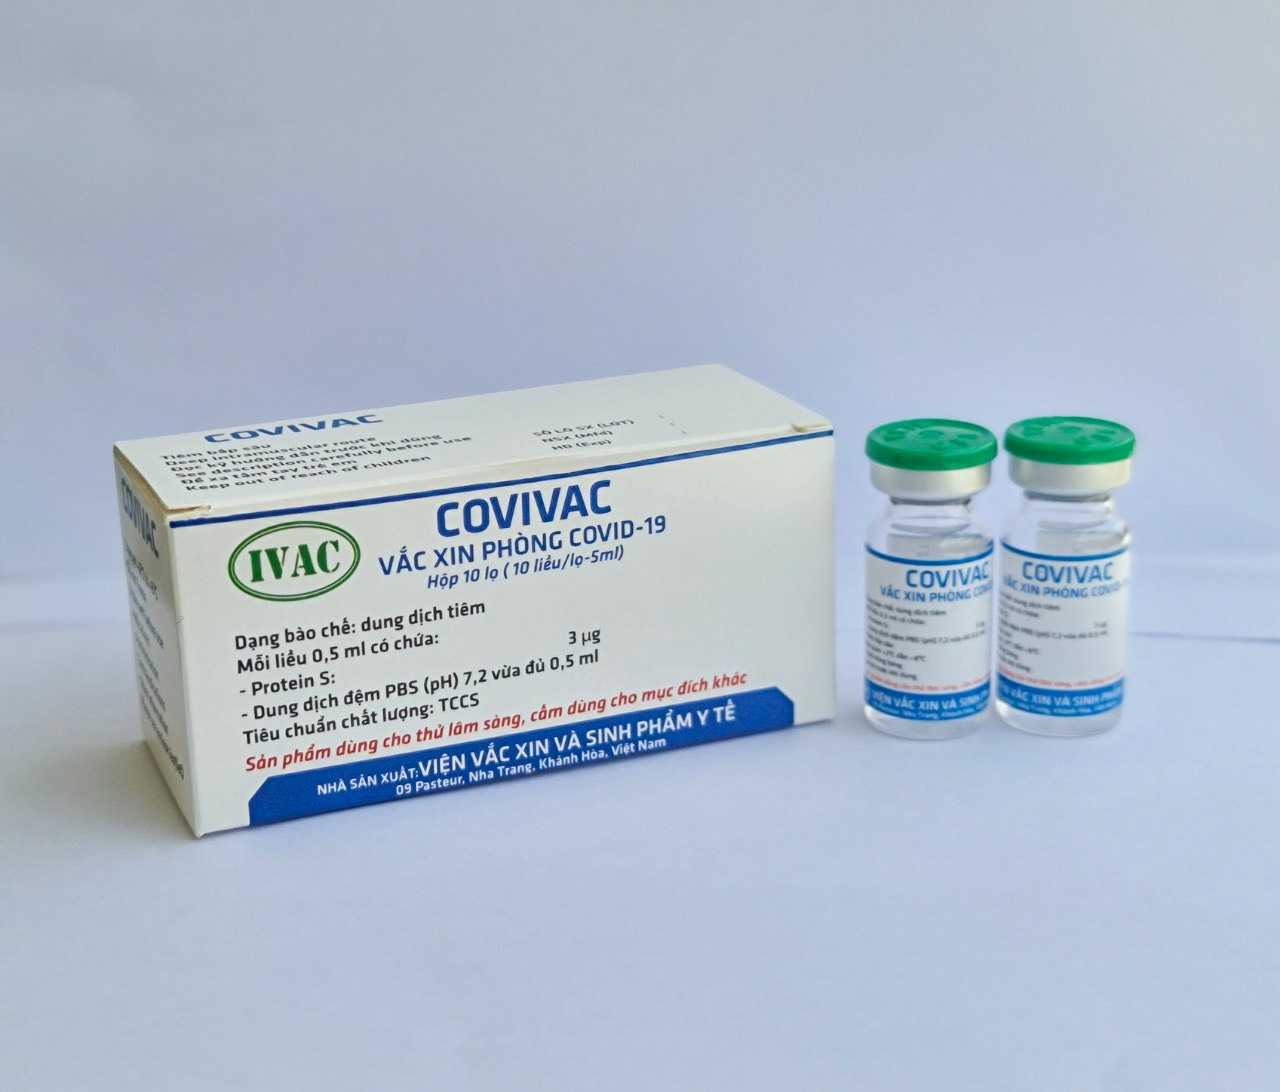 Vắc xin COVIVAC do IVAC nghiên cứu đang thử nghiệm lâm sàng giai đoạn 2 Ảnh: IVAC cung cấp